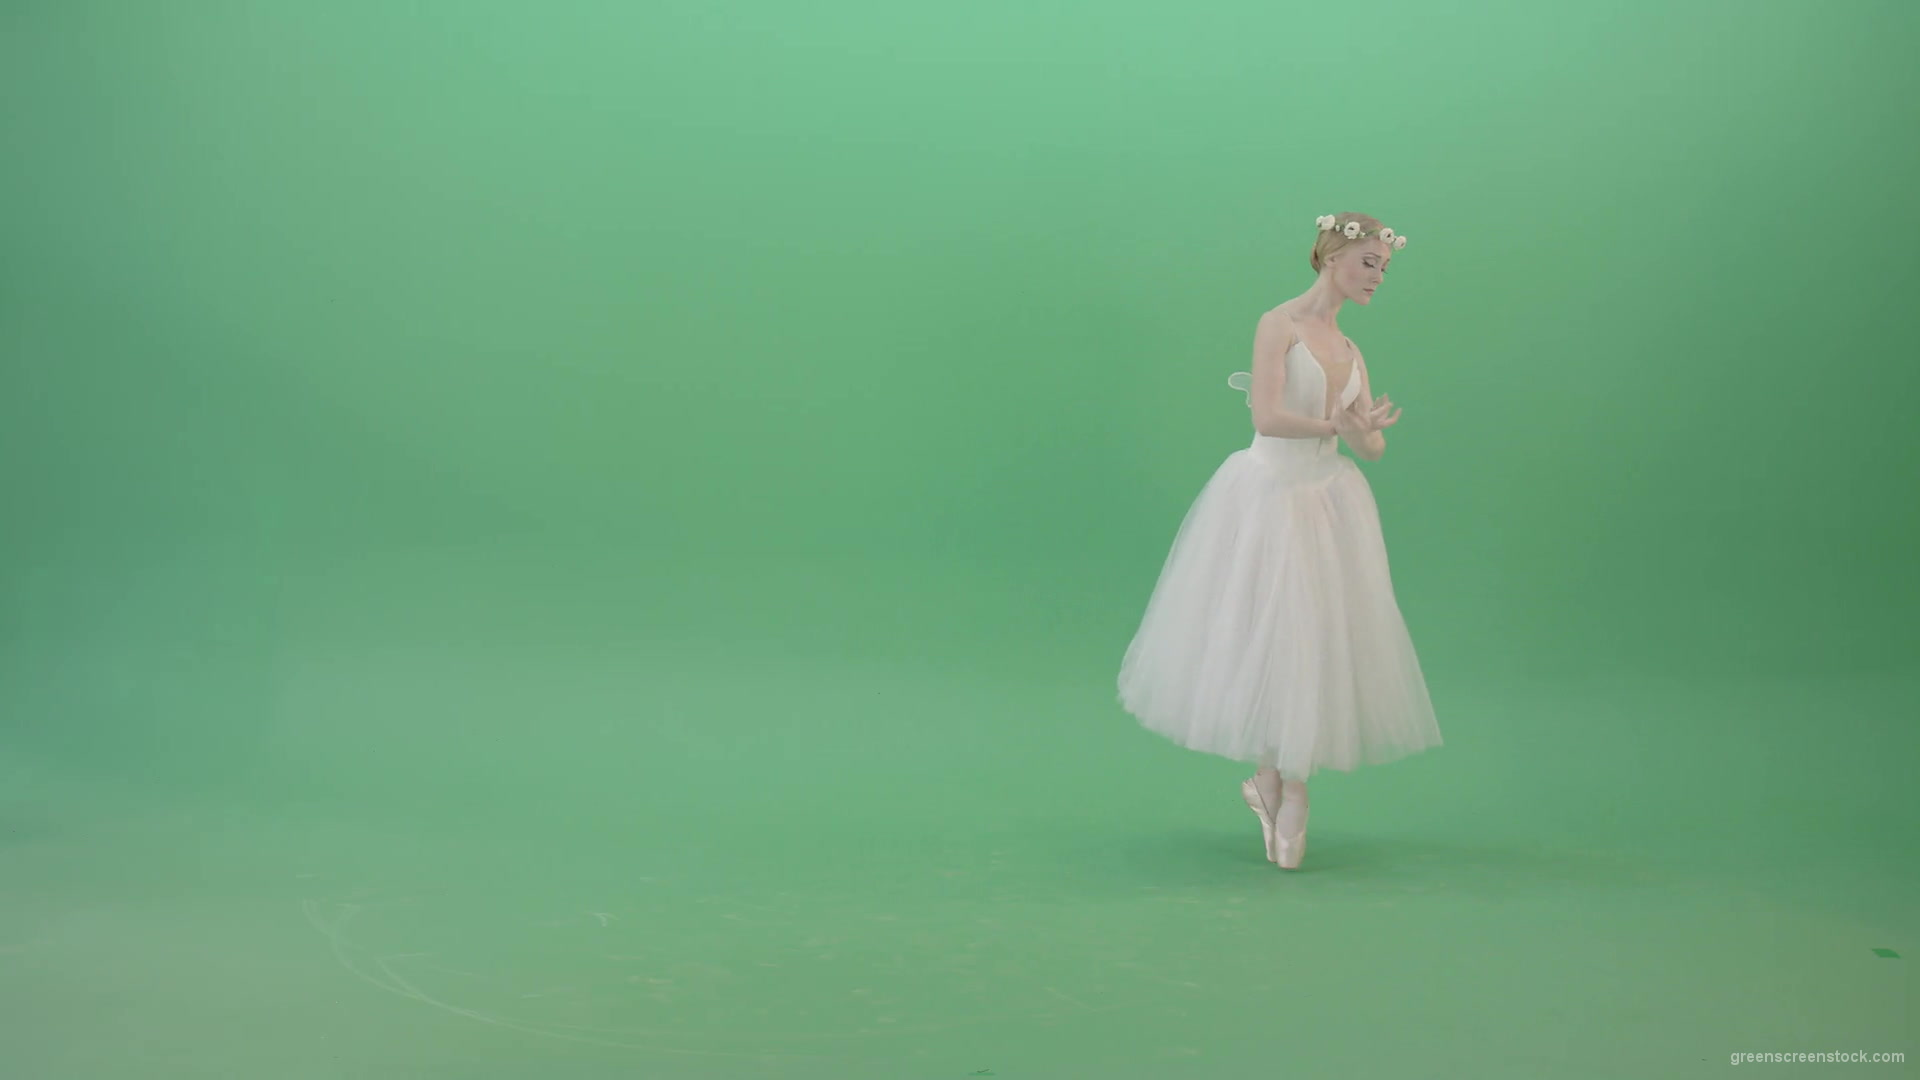 Elegant-Ballerina-Ballet-Girl-posing-for-Advertising-packshot-4K-Video-Footage-1920_004 Green Screen Stock